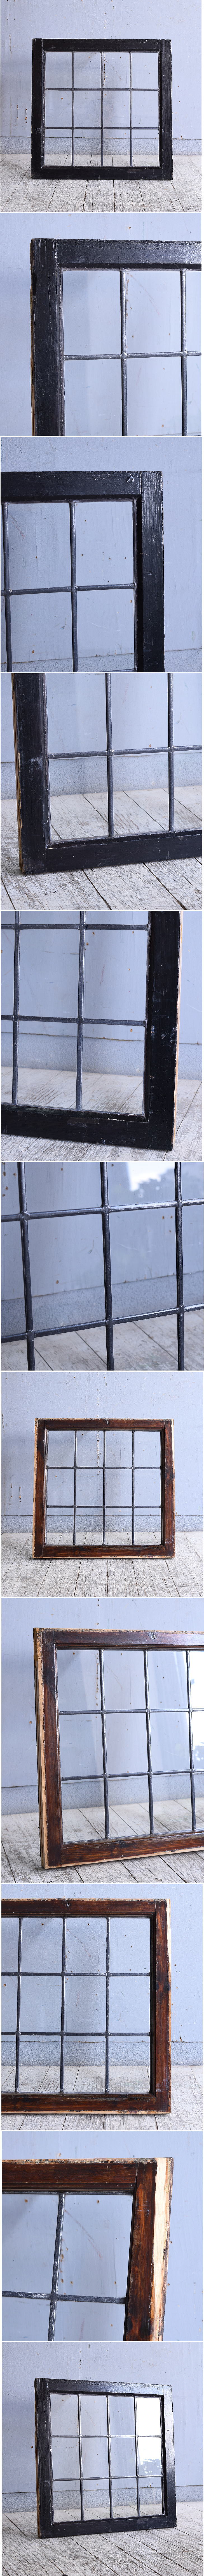 イギリス アンティーク 窓 無色透明 10002